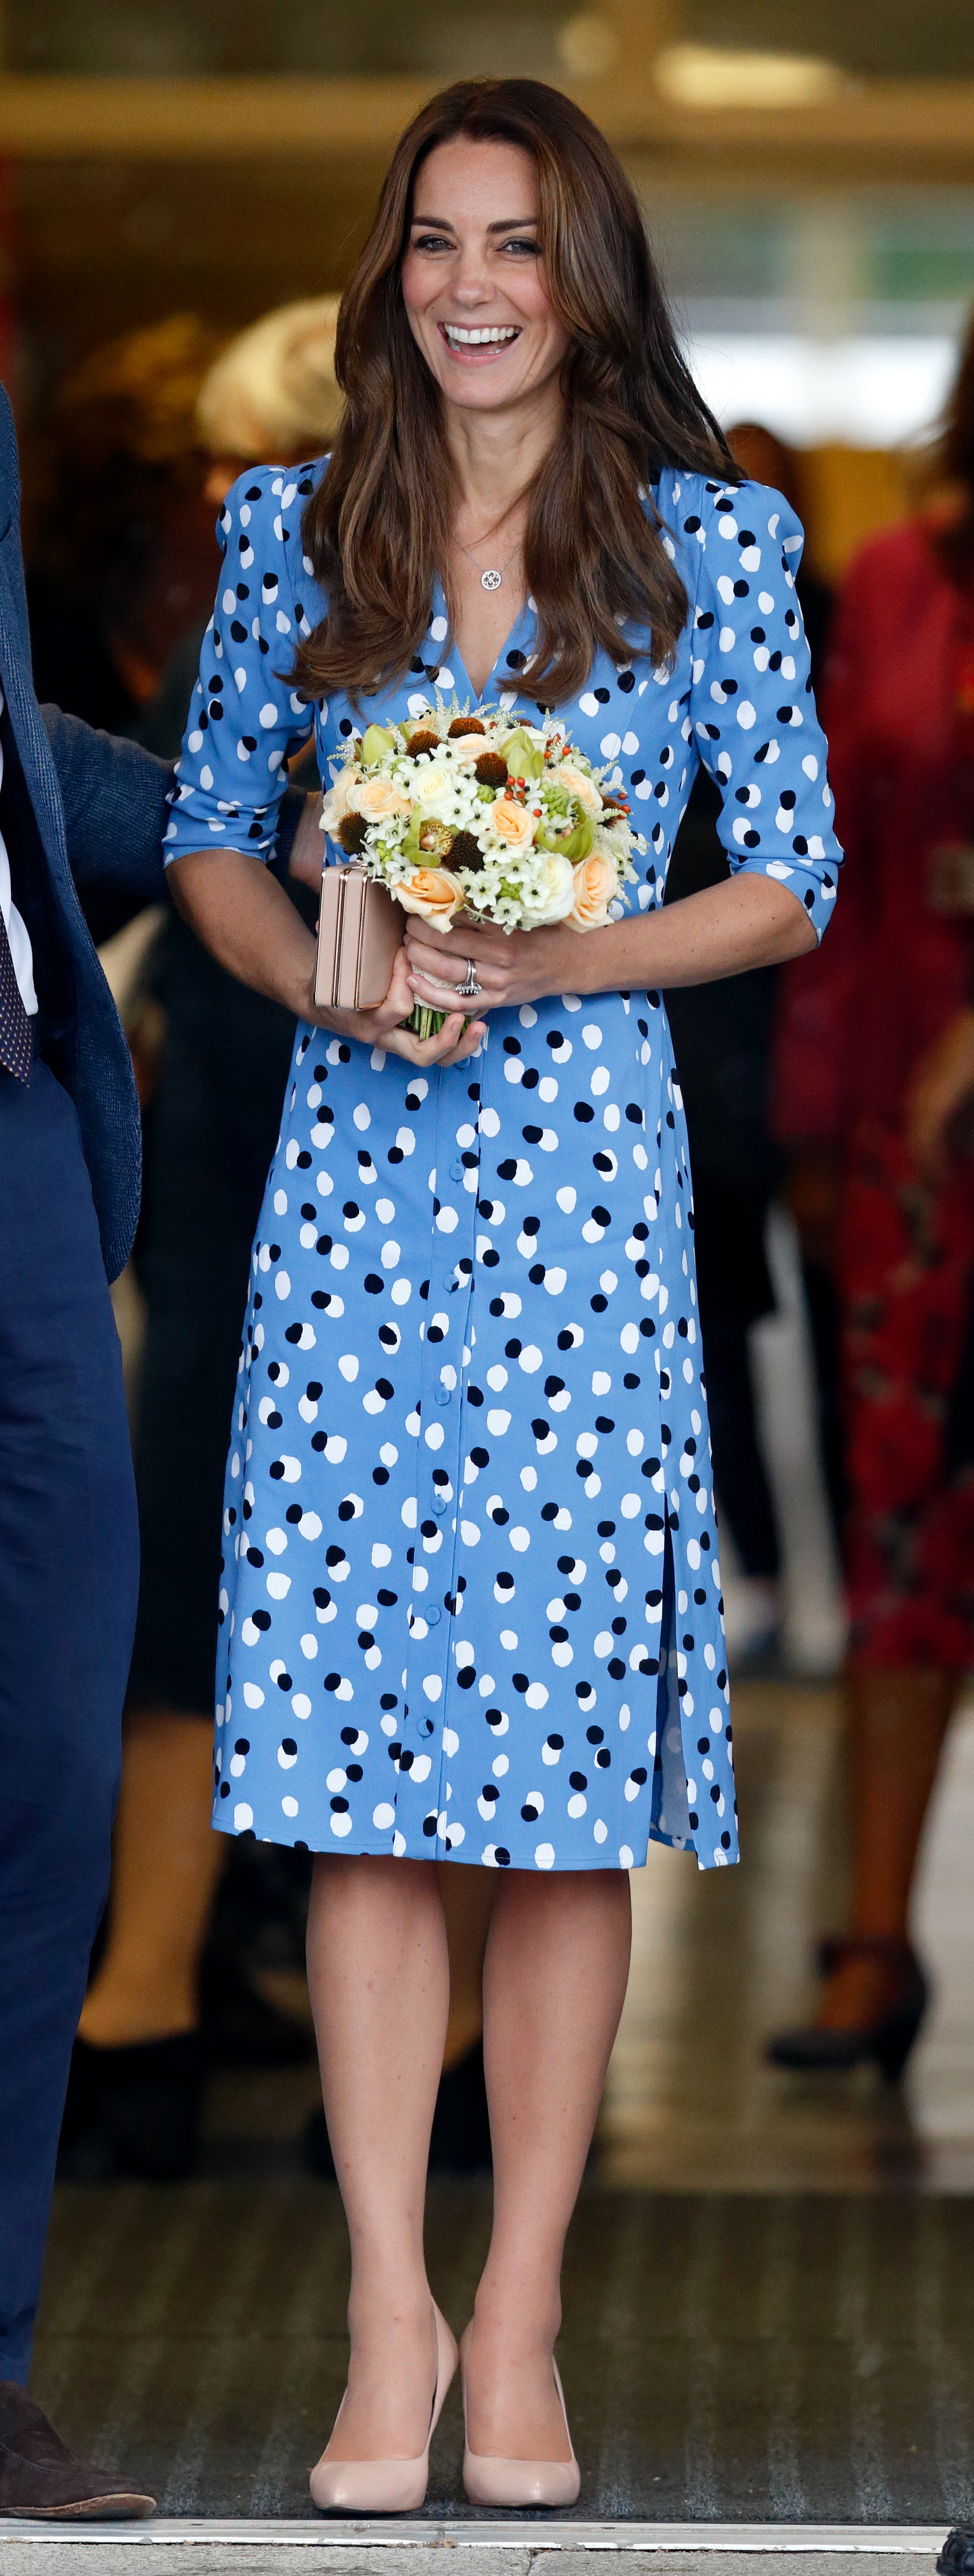 Chiếc váy này là một ví dụ điển hình về việc Kate Middleton chọn những bộ trang phục mang lại cảm giác vừa mới mẻ vừa vượt thời gian. Mặc dù hơn 40 tuổi nhưng cô ấy có thể mặc lại chiếc váy xinh đẹp này.